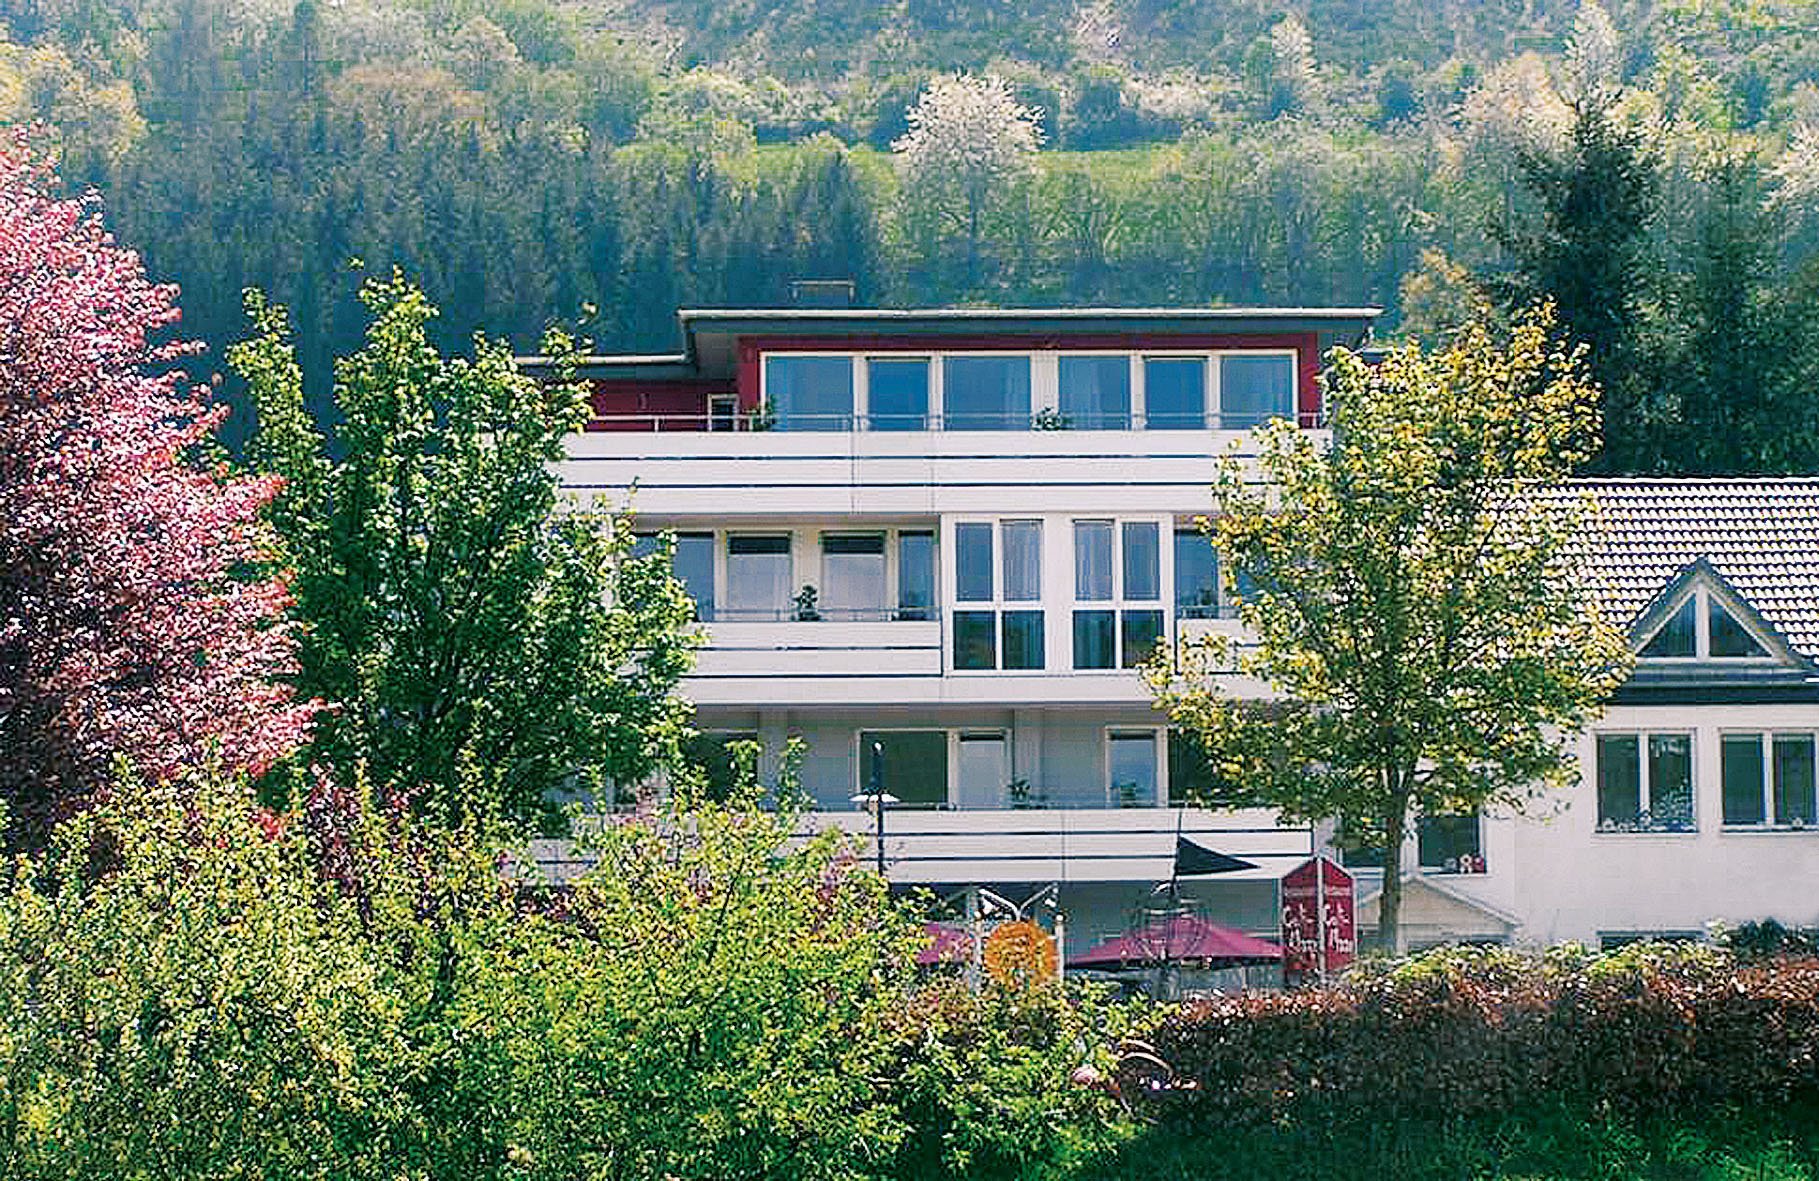 4 Tage Vulkaneifel Spartage 3=2 – Landhotel Maarium (3.5 Sterne) in Meerfeld, Rheinland-Pfalz